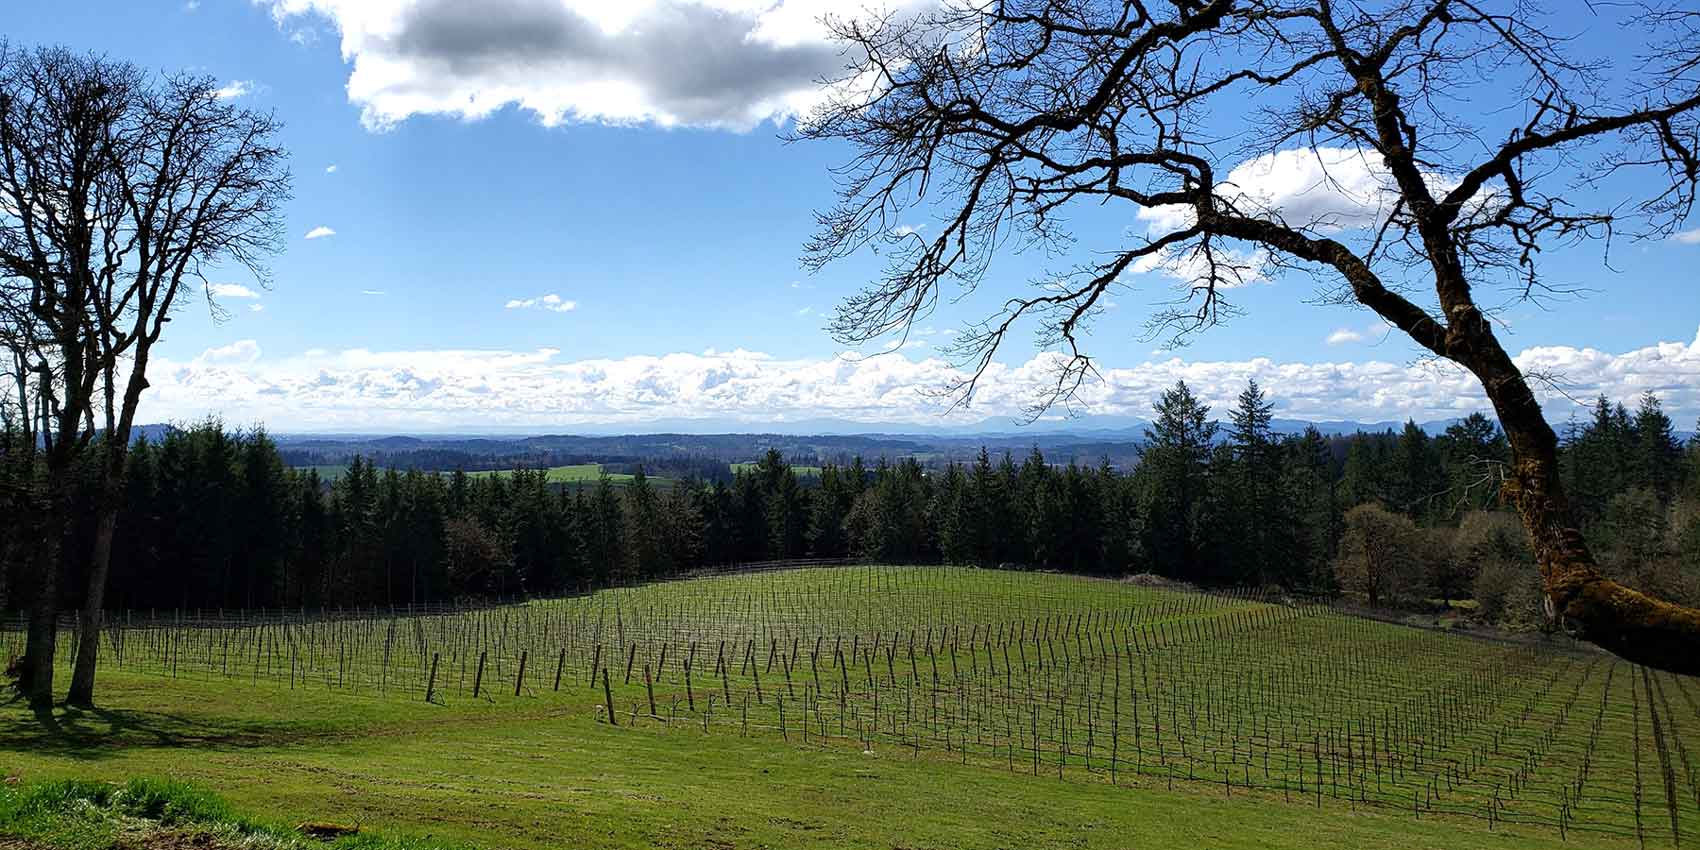 Spring vineyard scene